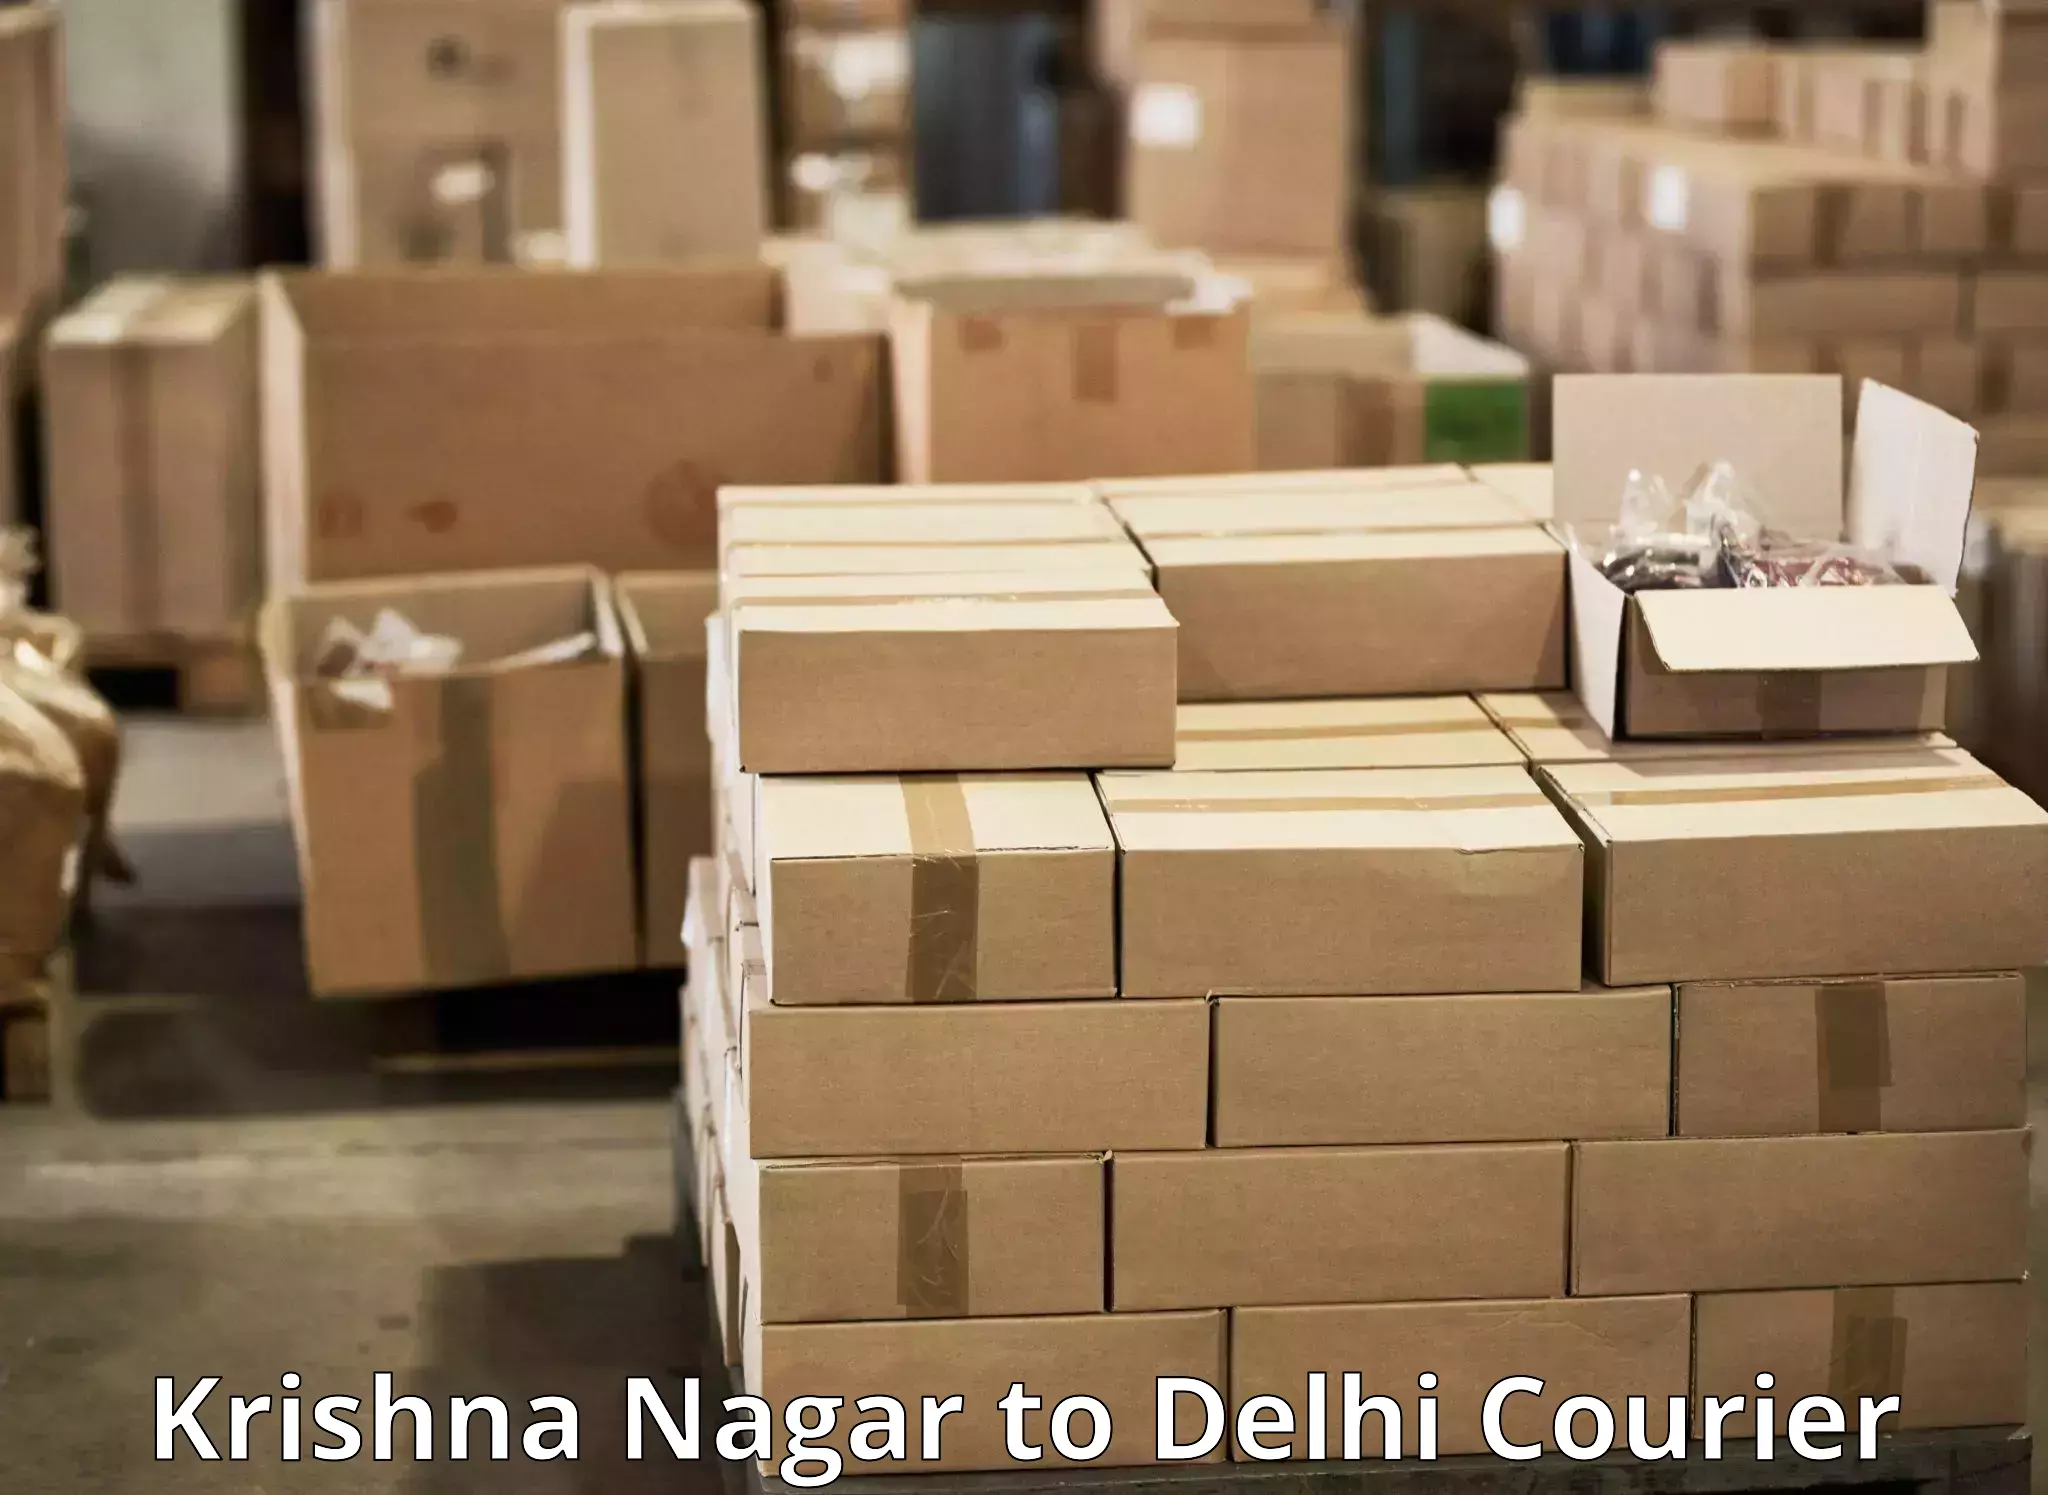 High-efficiency logistics Krishna Nagar to Delhi